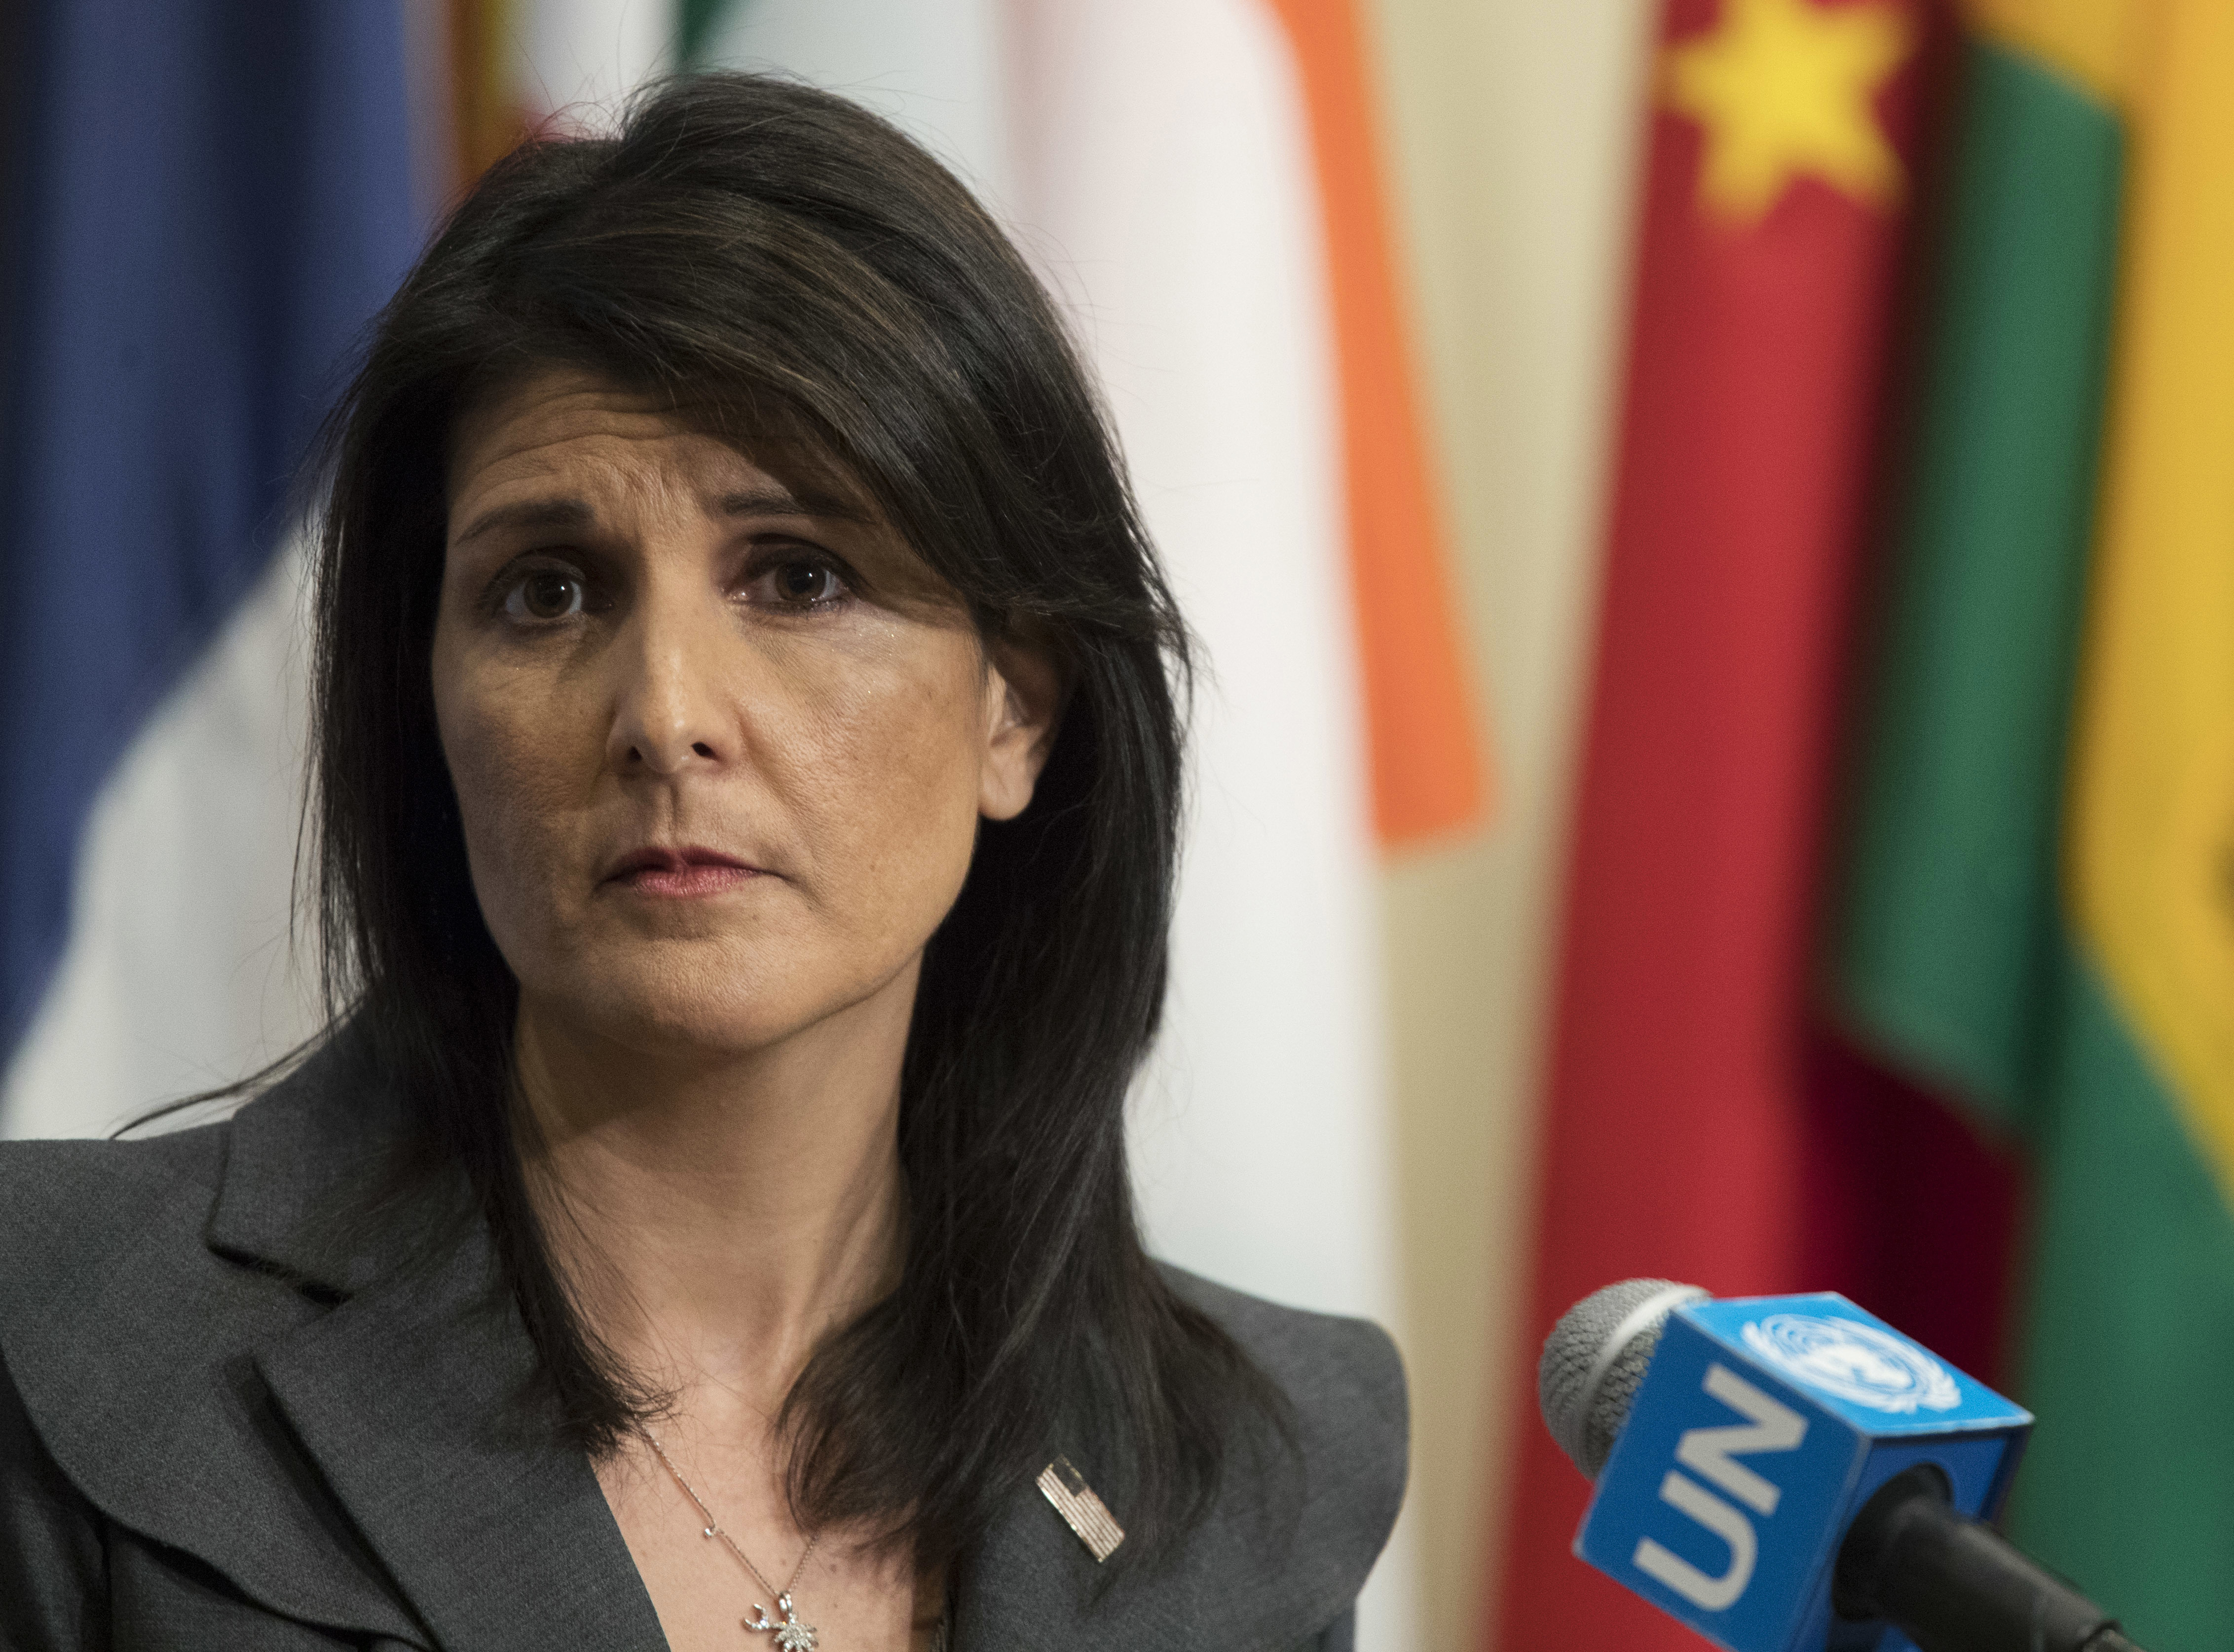 UN Ambassador Haley resigning; she gives no reason